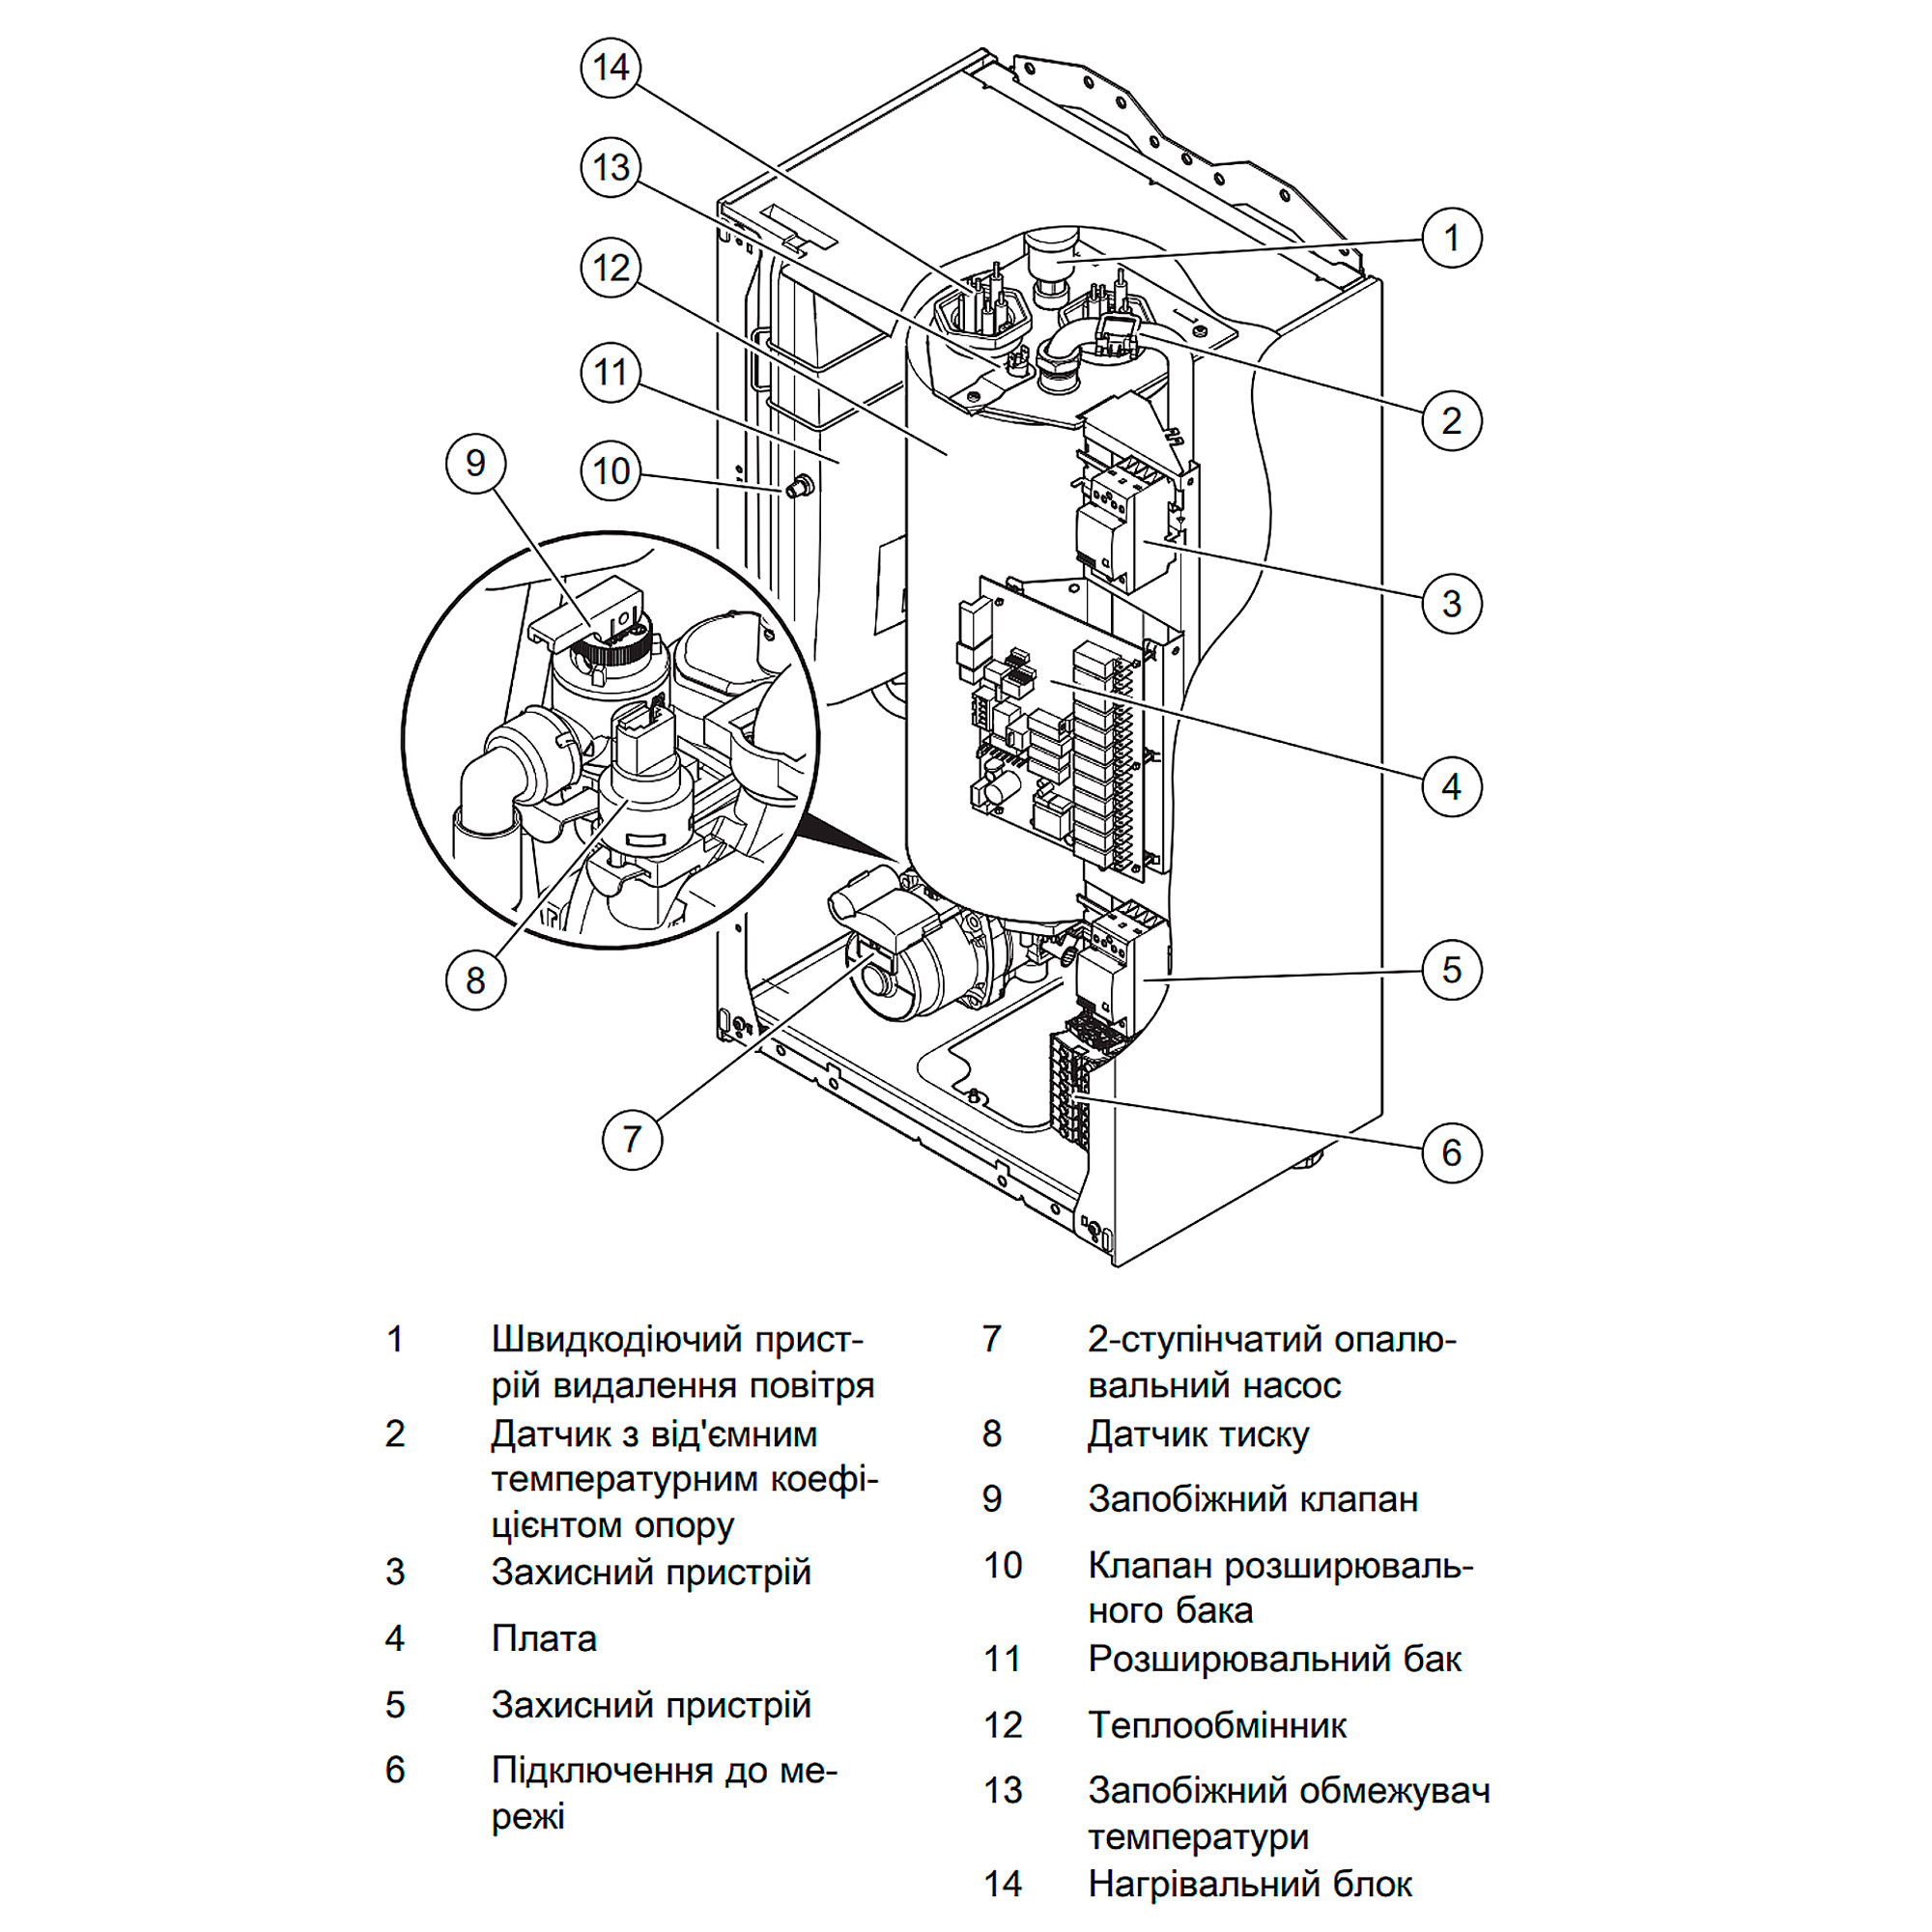 Электрический котел Protherm Скат 9KE/14 (3+6 кВт)  цена 29700.00 грн - фотография 2